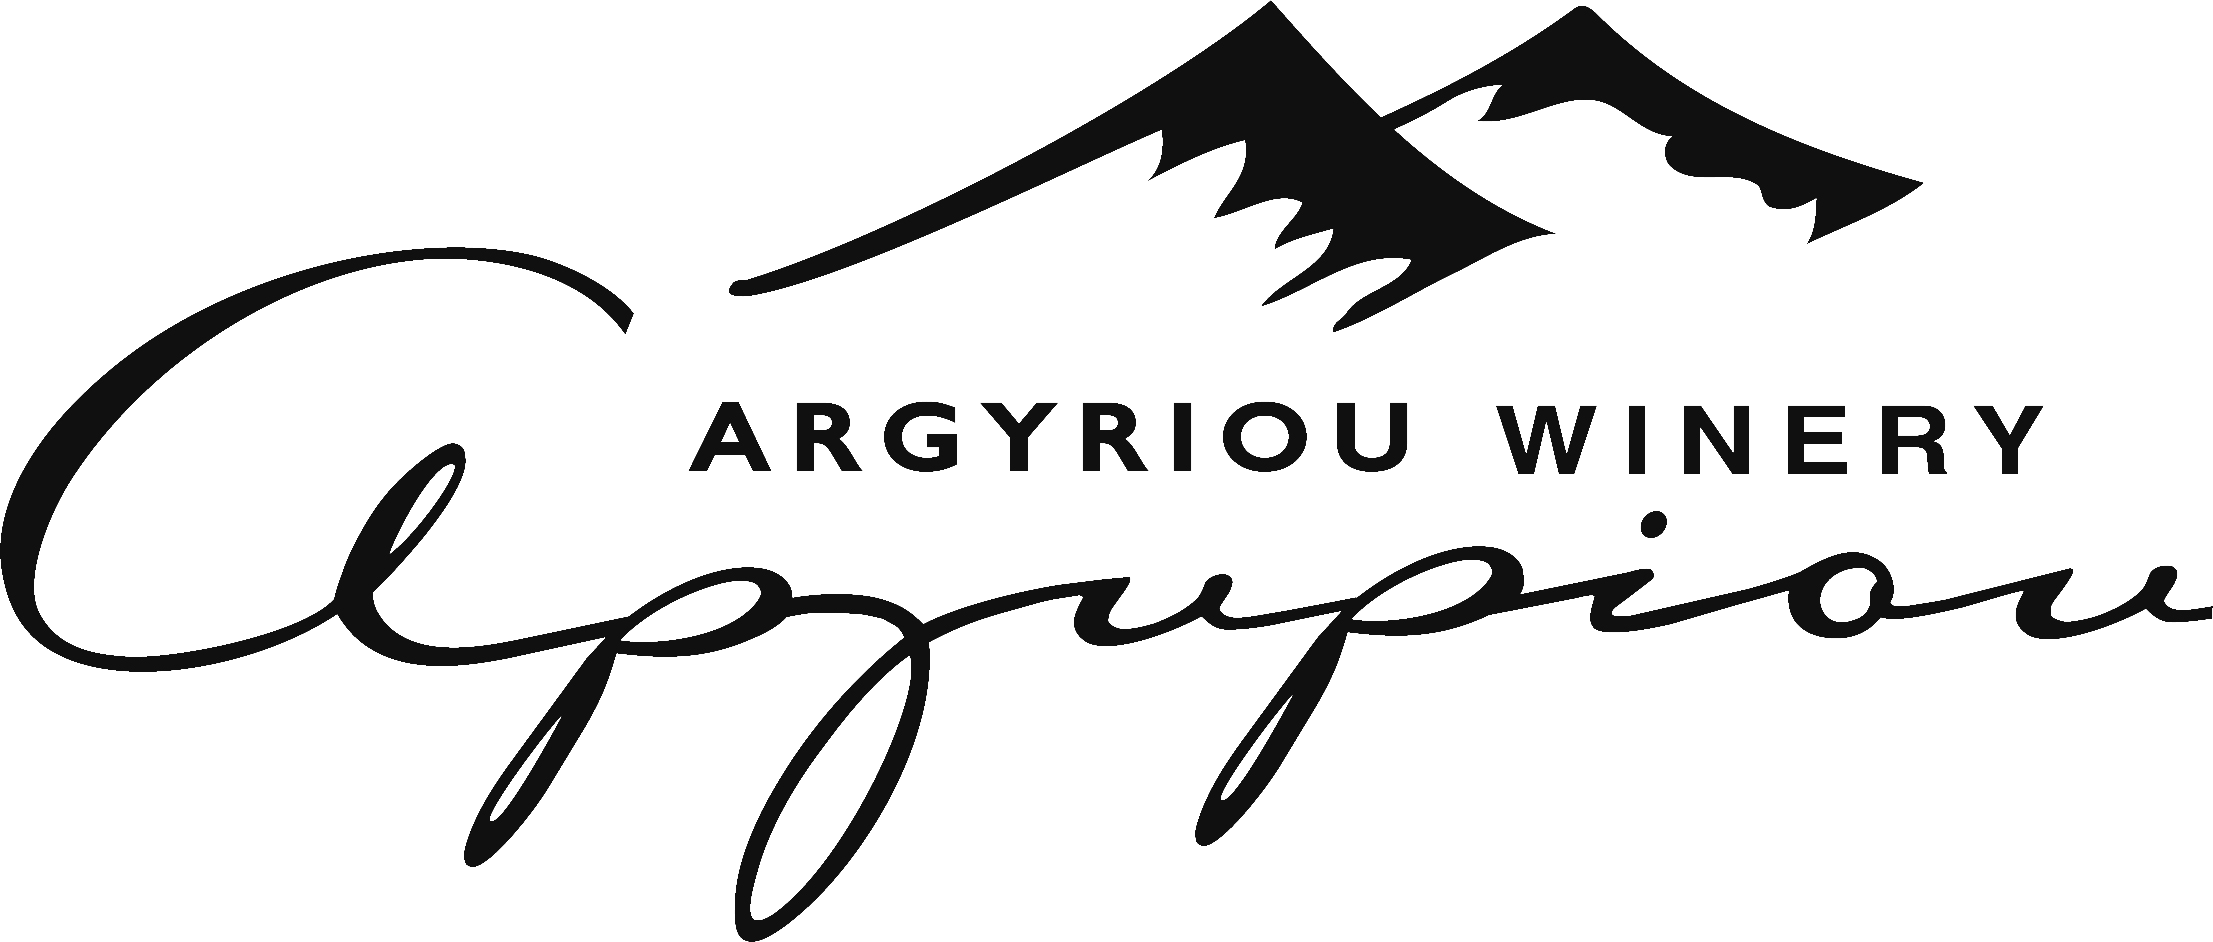 Argyriou Winery logo